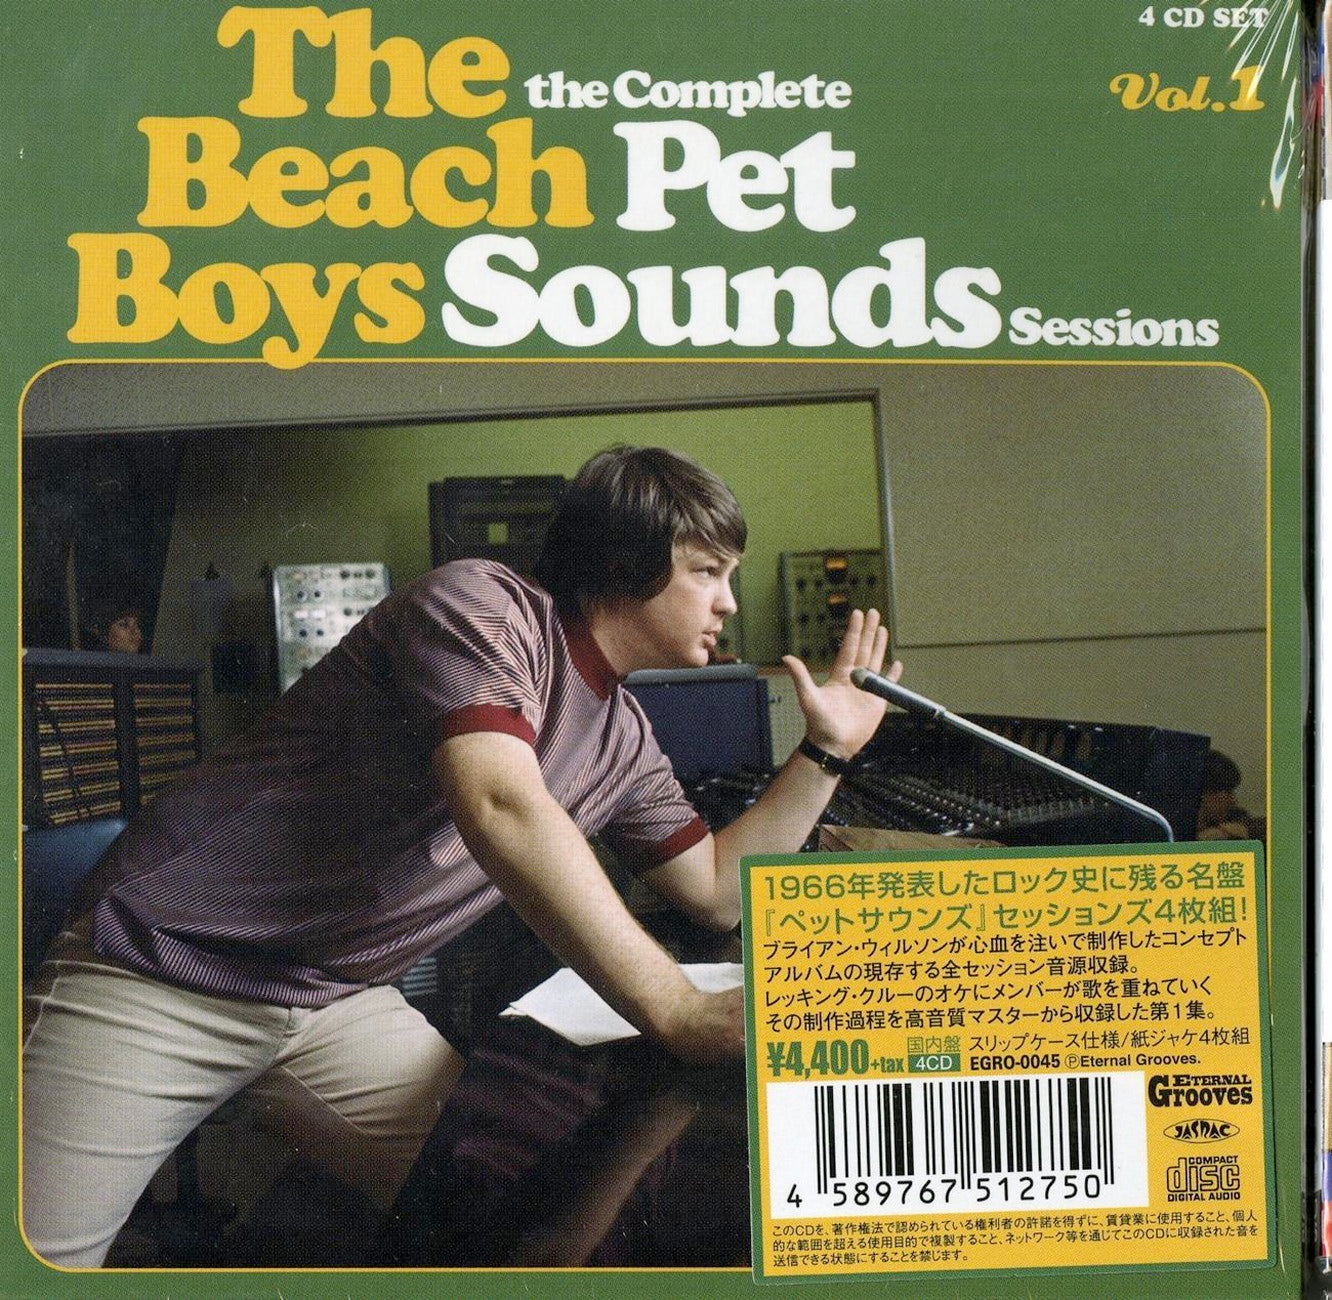 The Beach Boys - The Complete Pet Sounds Sessions Vol.1 - Japan Mini LP 4 CD Box set